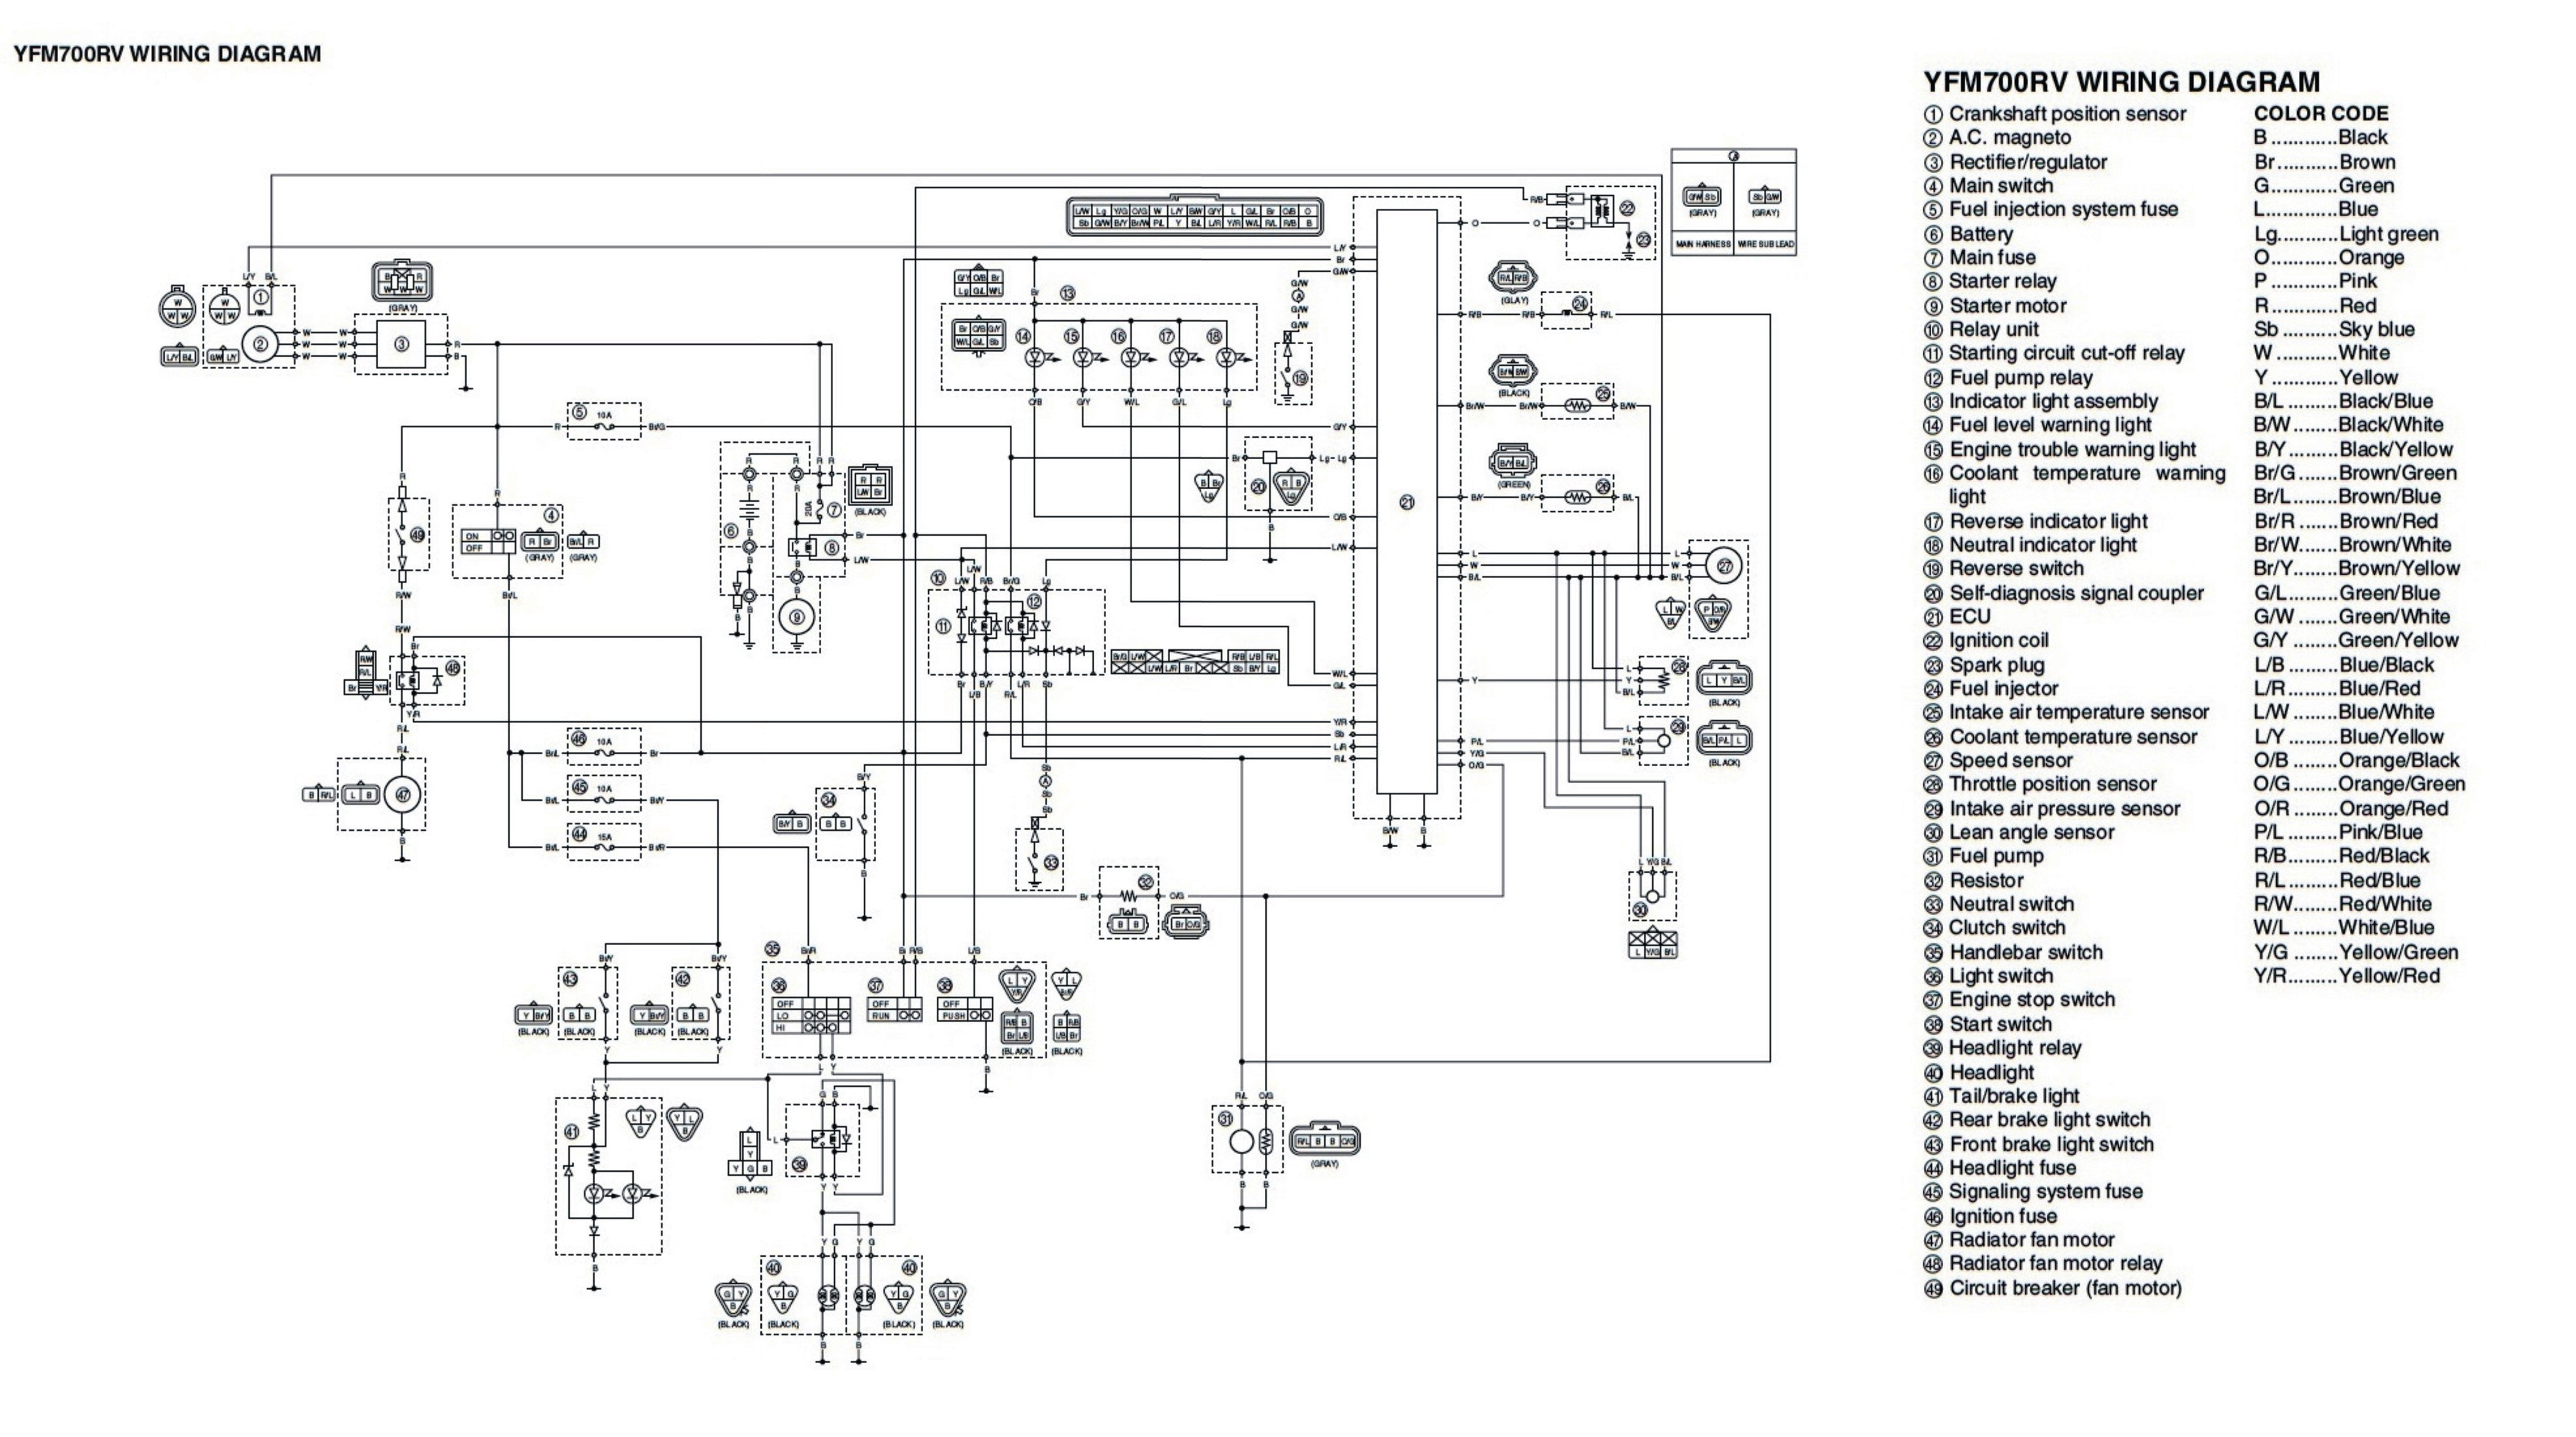 2013 10 05 wiring diagram yfm700rv 2005 yamaha raptor atv